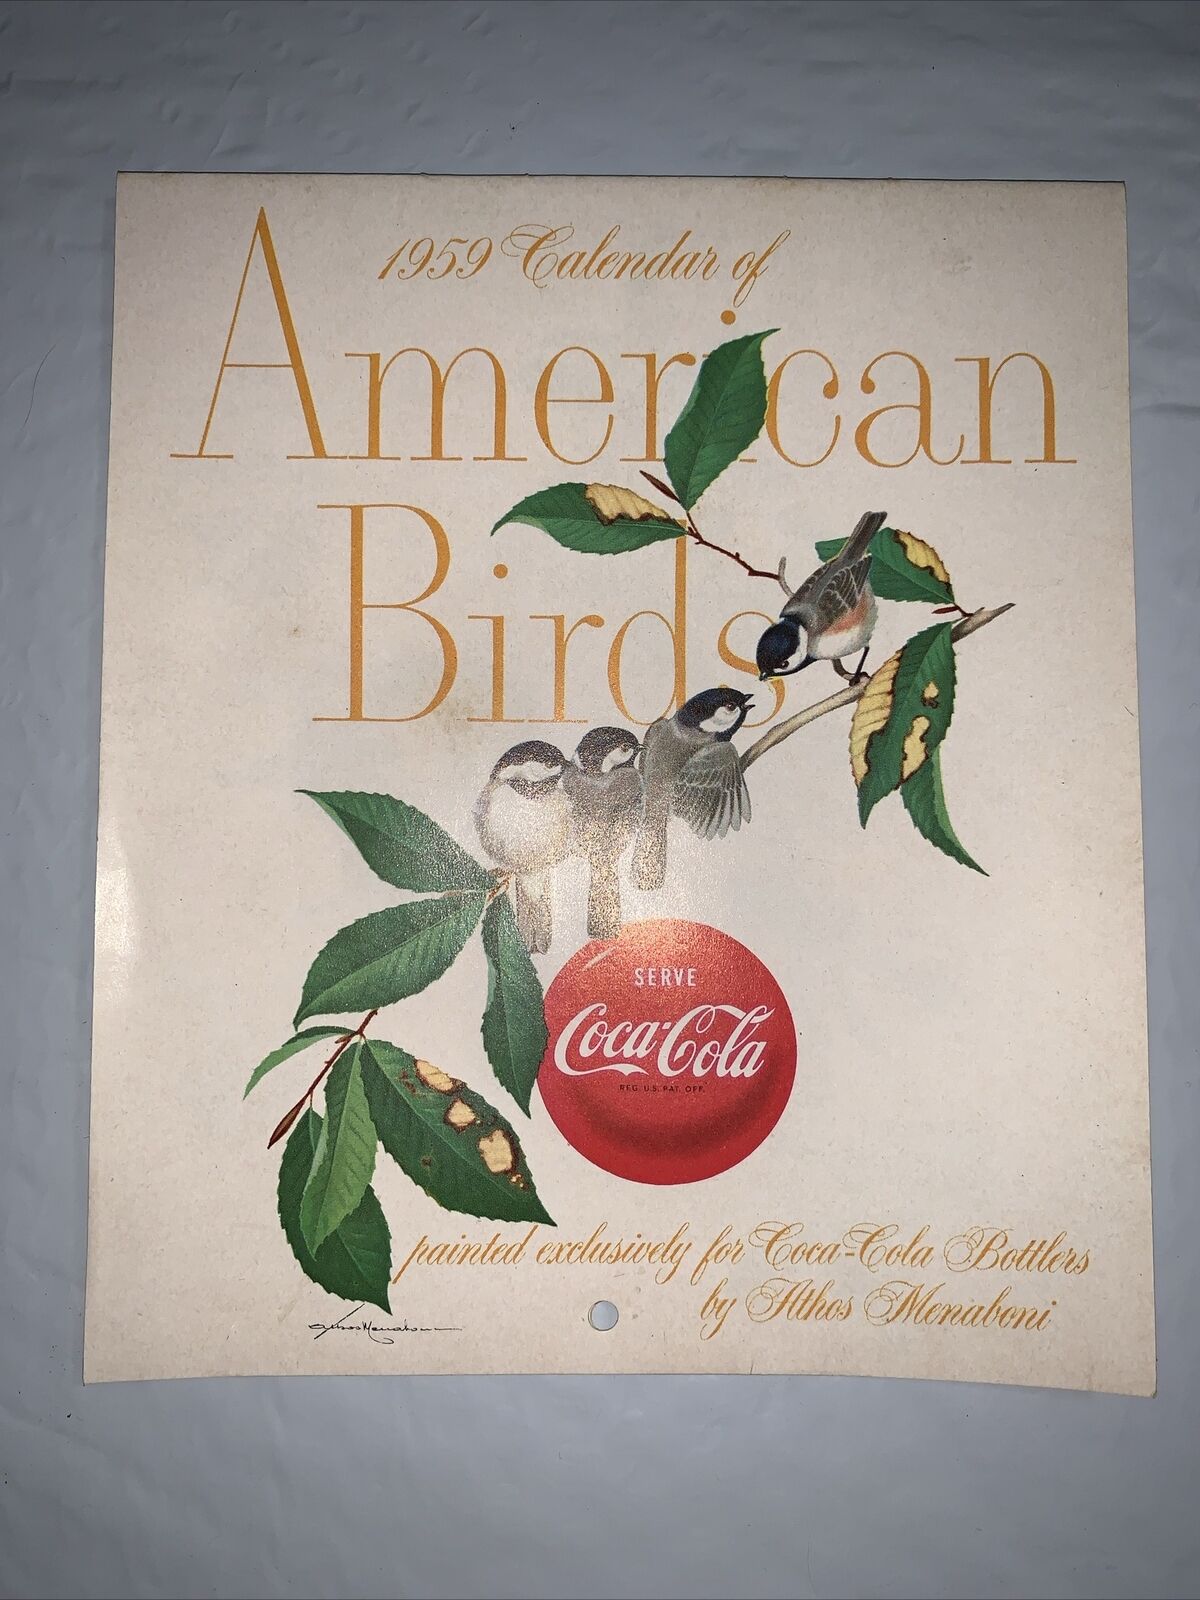 1959 Coca Cola Calendar of American Birds 7 x 12” by ATHOS MENABONIL